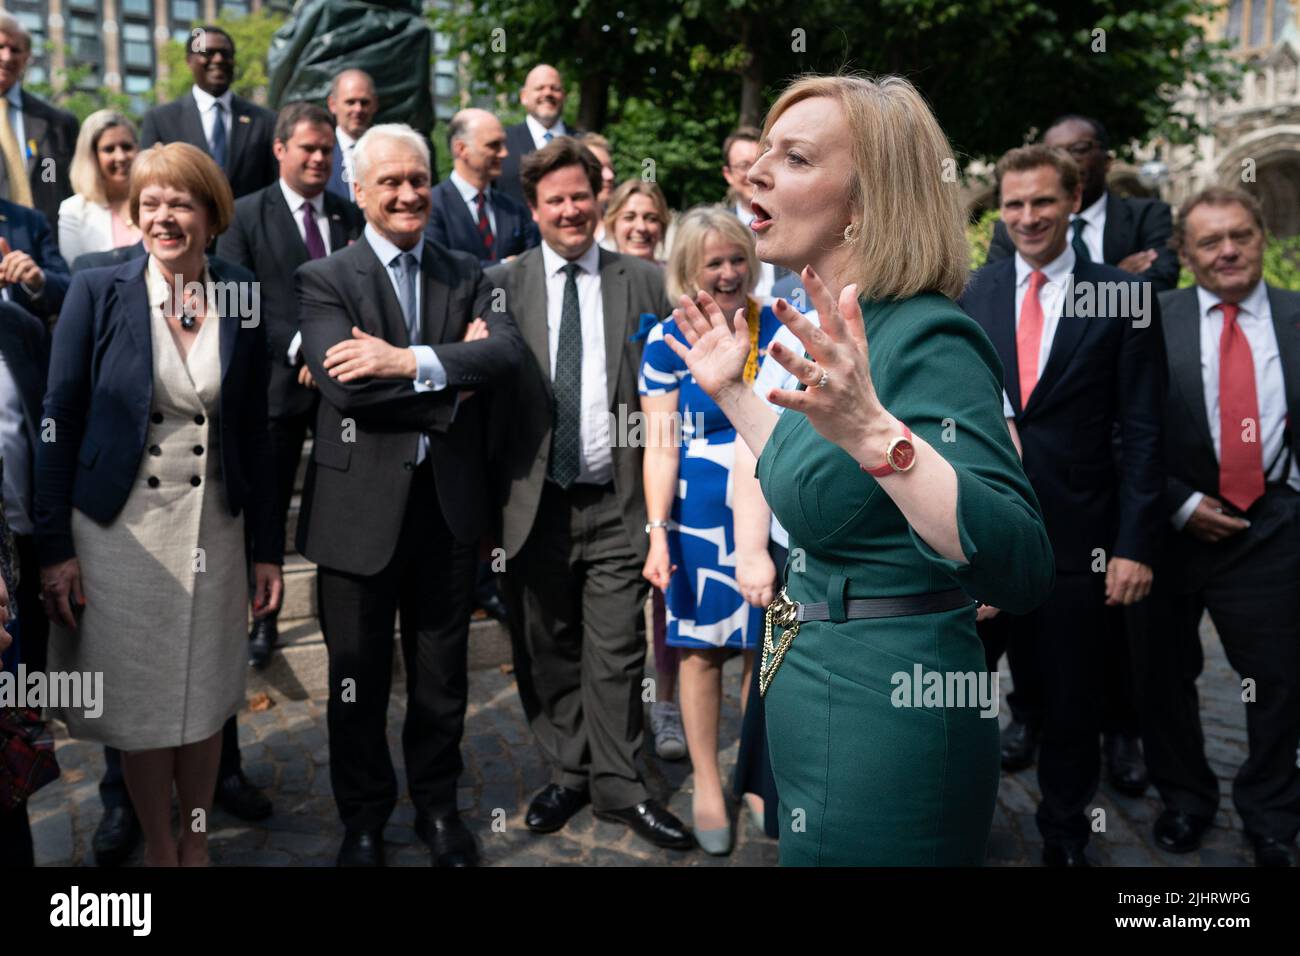 Die Außenministerin und Tory-Kandidatin Liz Truss feiert mit ihren Unterstützern im Parlament, nachdem sie es gemeinsam mit Rishsi Sunak zu den letzten beiden Kandidaten für den Premierminister London gebracht hat. Bilddatum: Mittwoch, 20. Juli 2022. Stockfoto